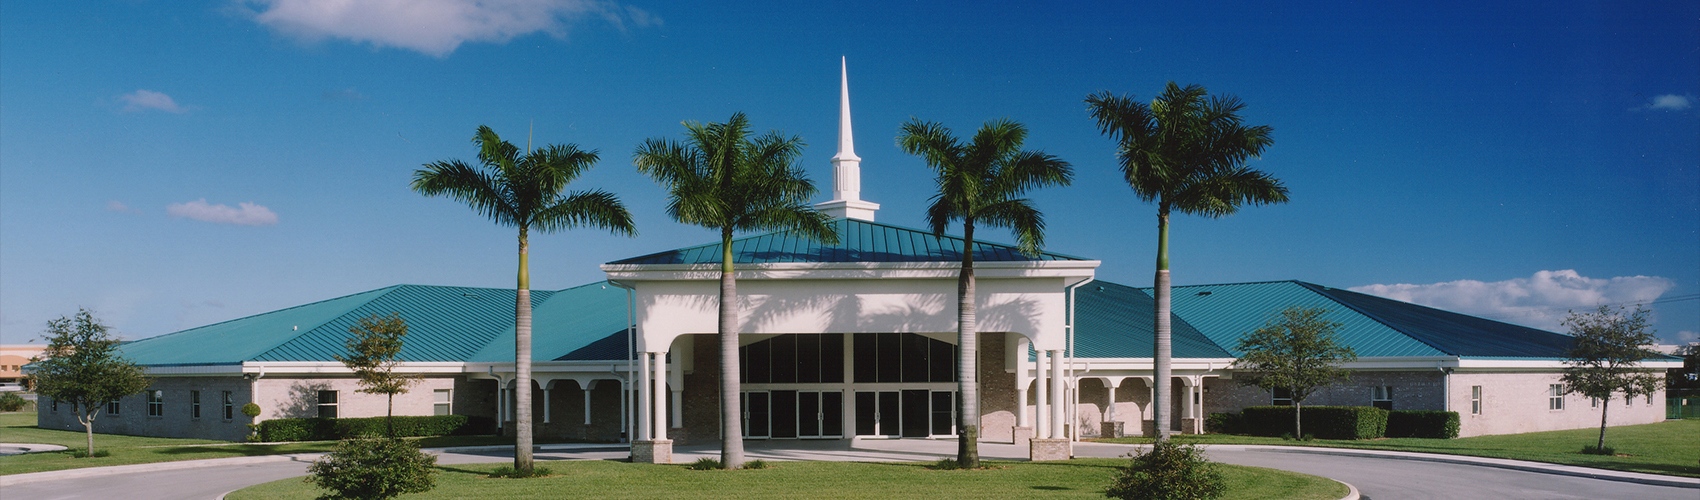 Home - Palm Beach Lakes Church Of Christ